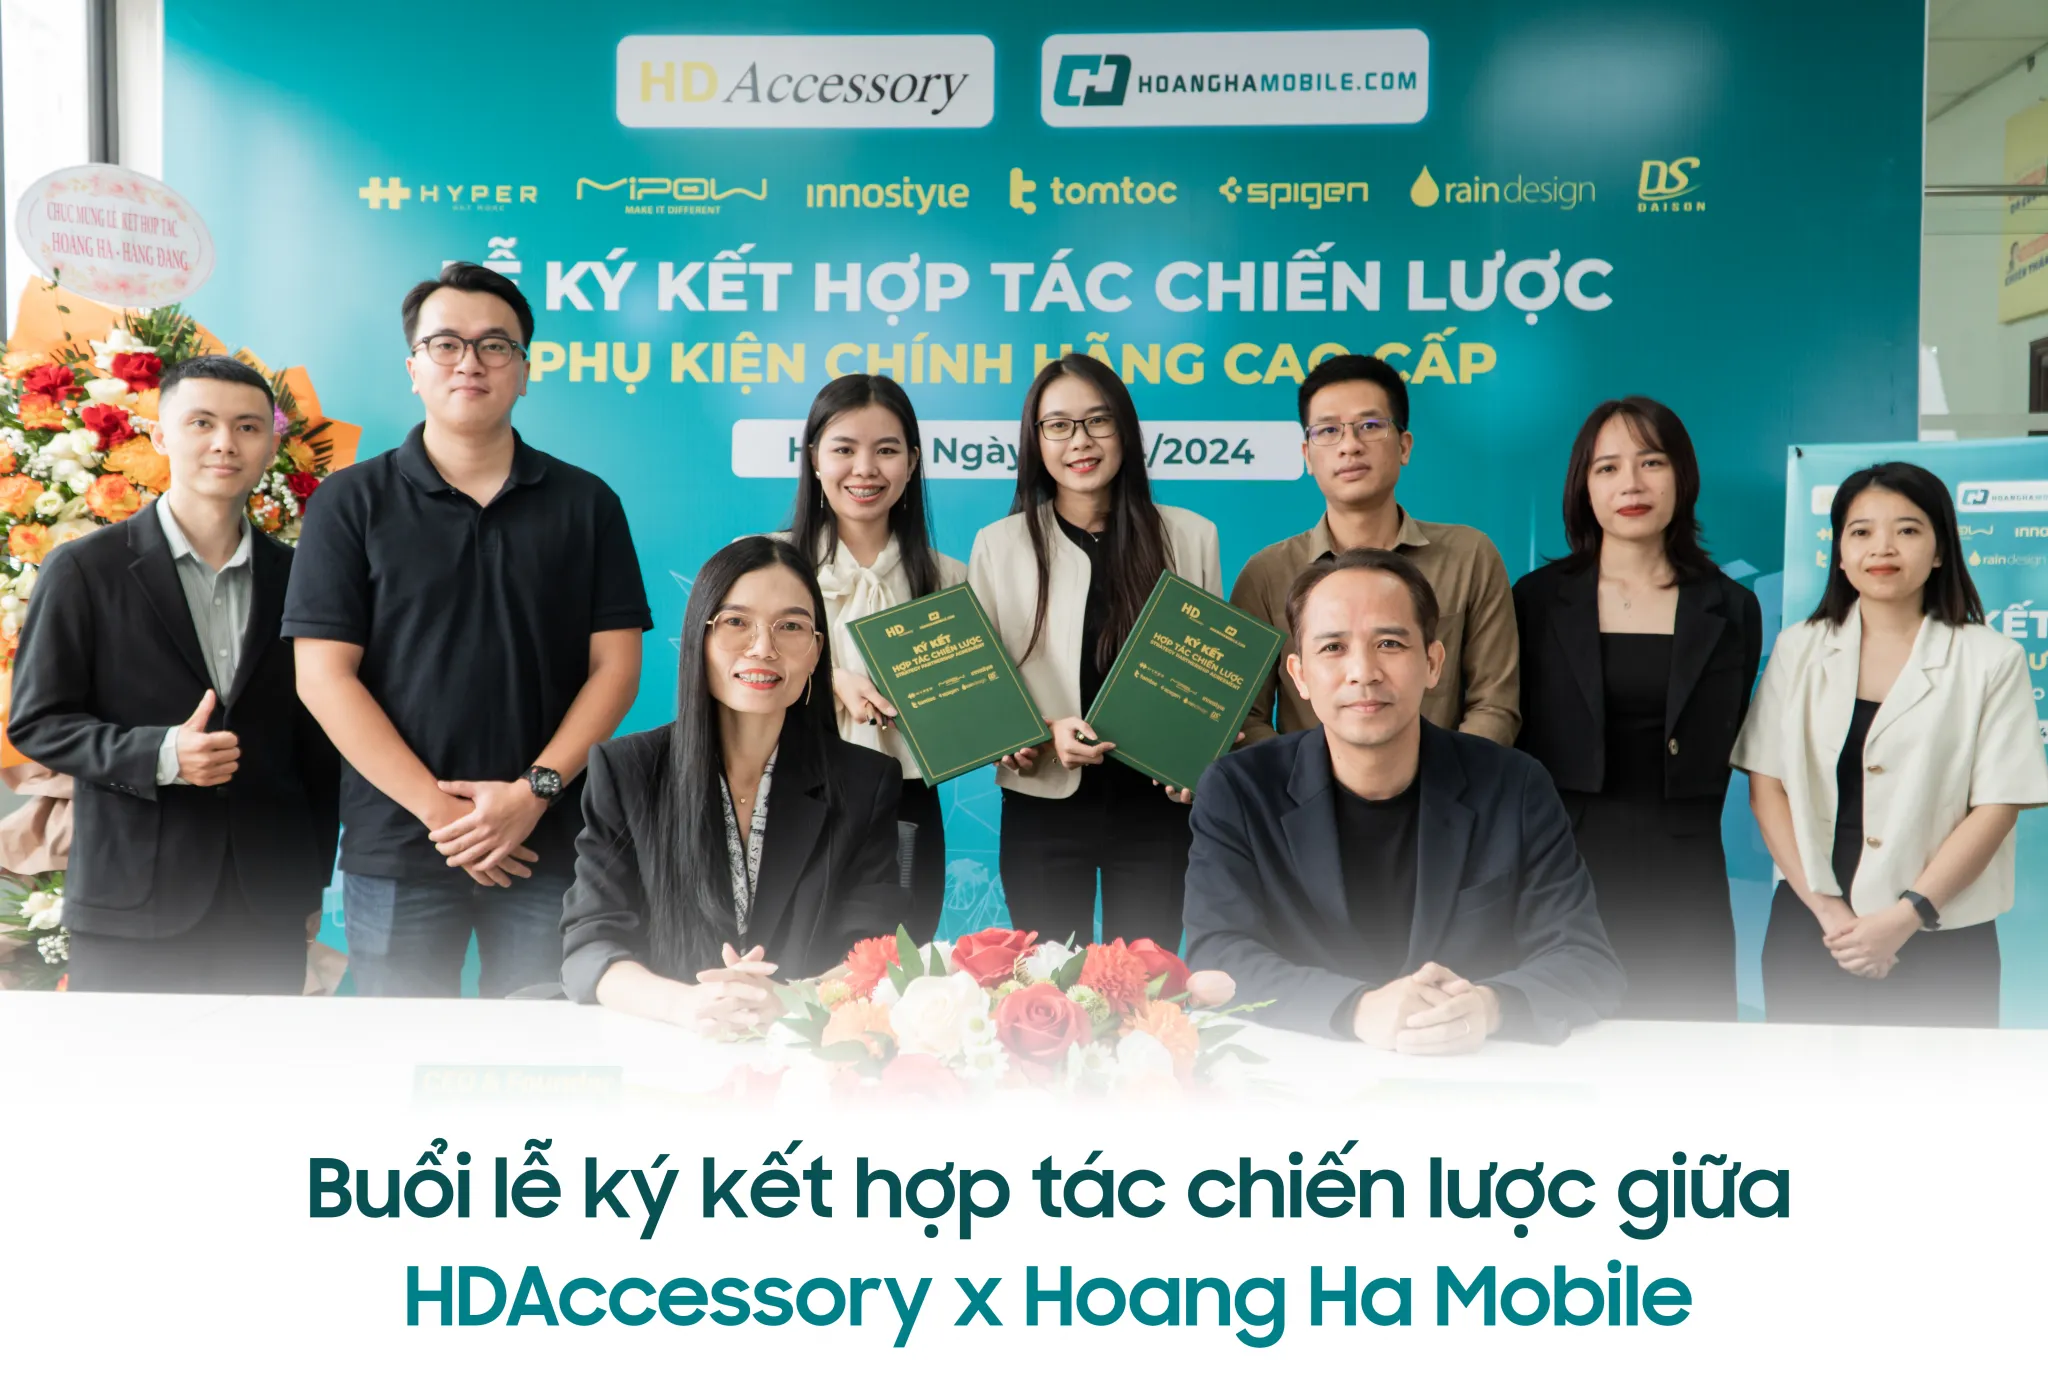 HDAccessory và Hoàng Hà Mobile bắt tay hợp tác phân phối phụ kiện chính hãng